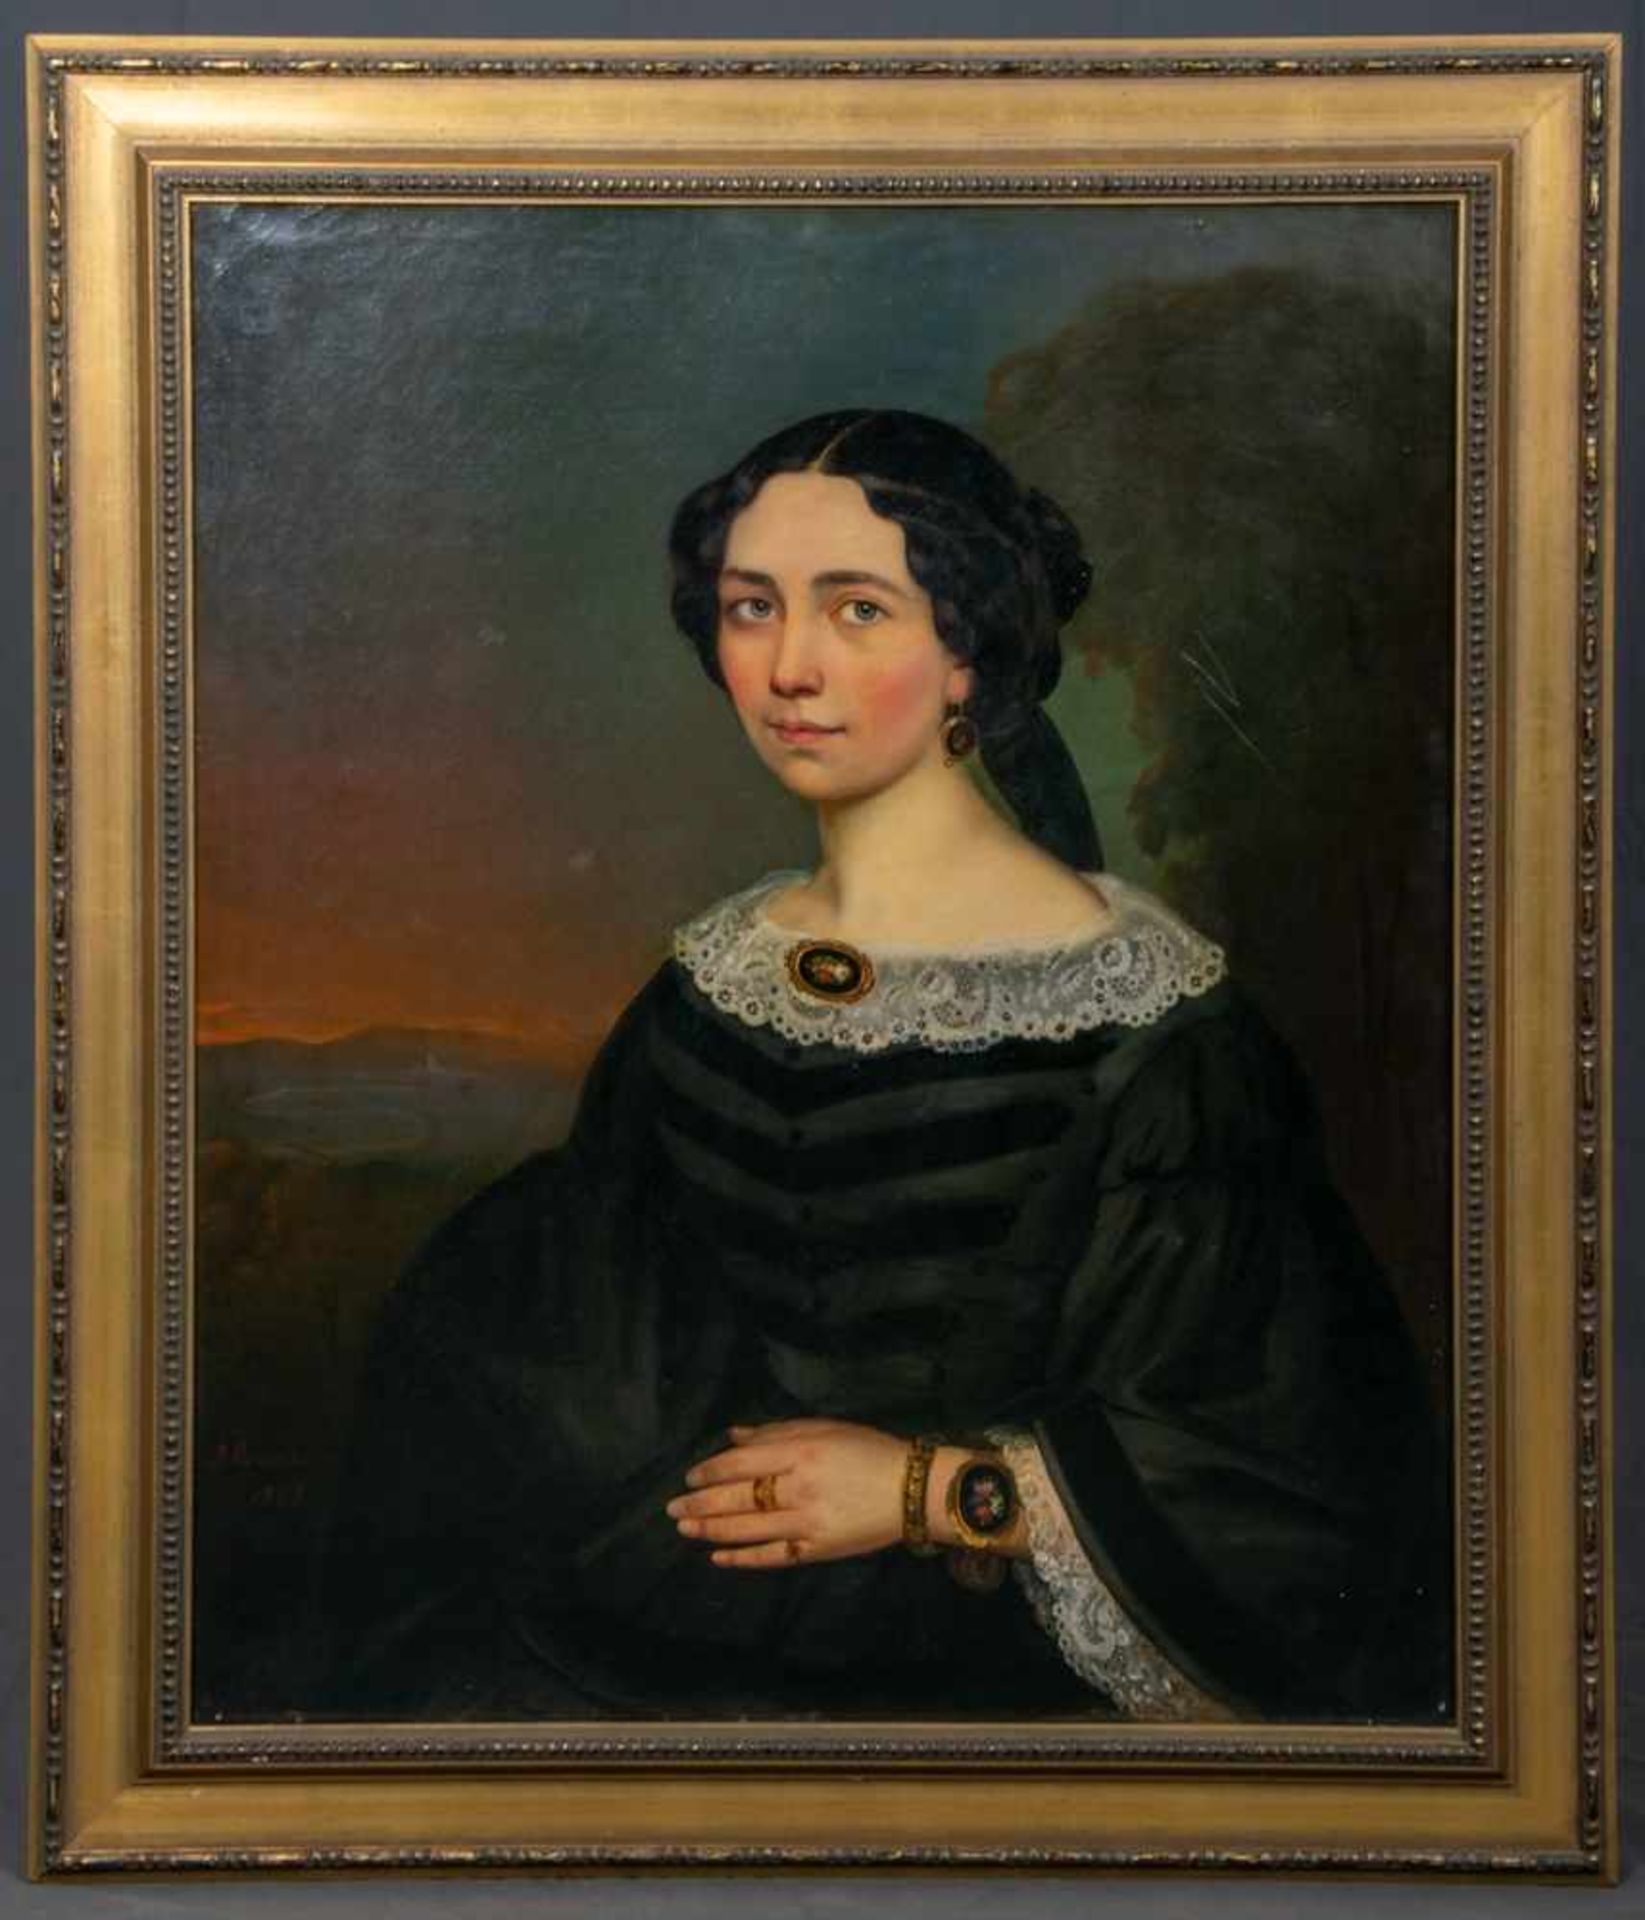 "Elegante junge Dame"- Damenporträt, Öl auf Leinwand, ca 83 x 69 cm, unklar signiert, 1858 datiertes